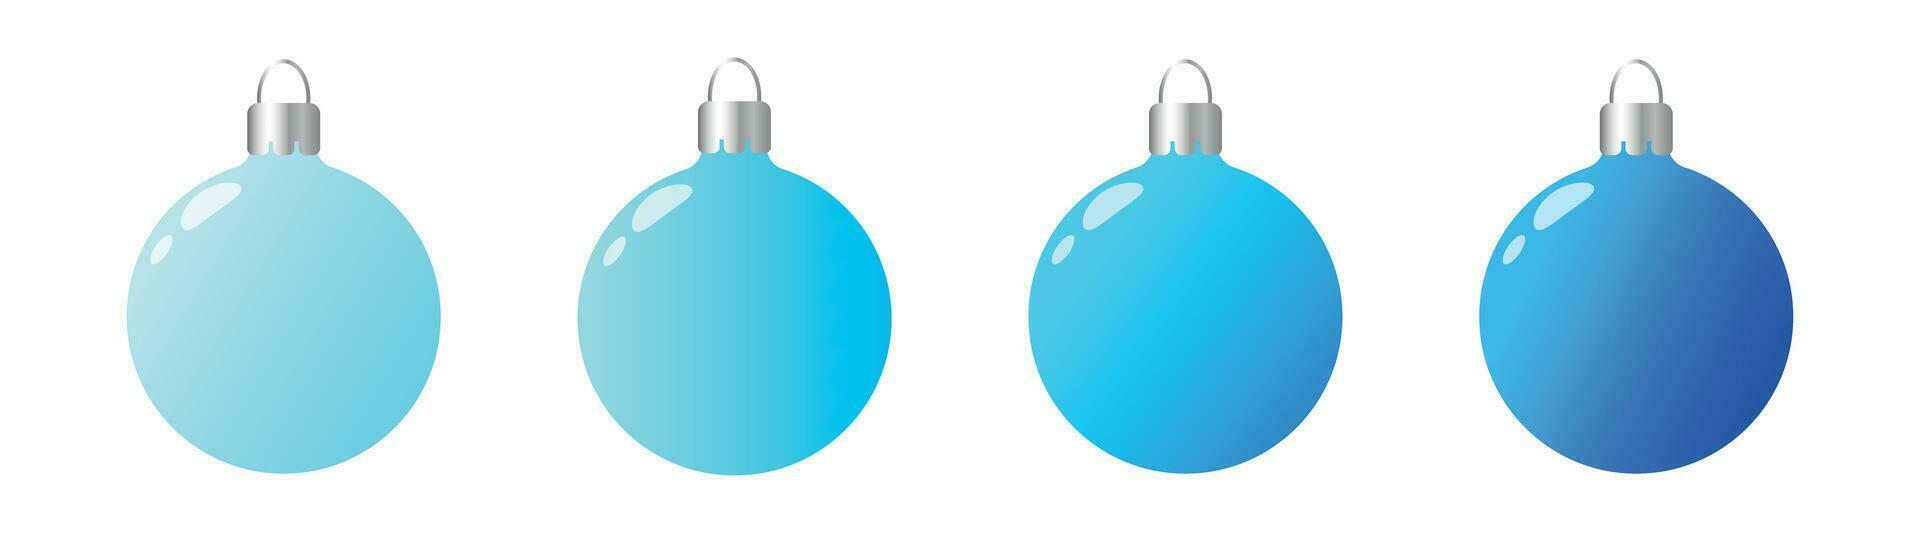 nieuw jaar en Kerstmis ballen in blauw tonen. vector